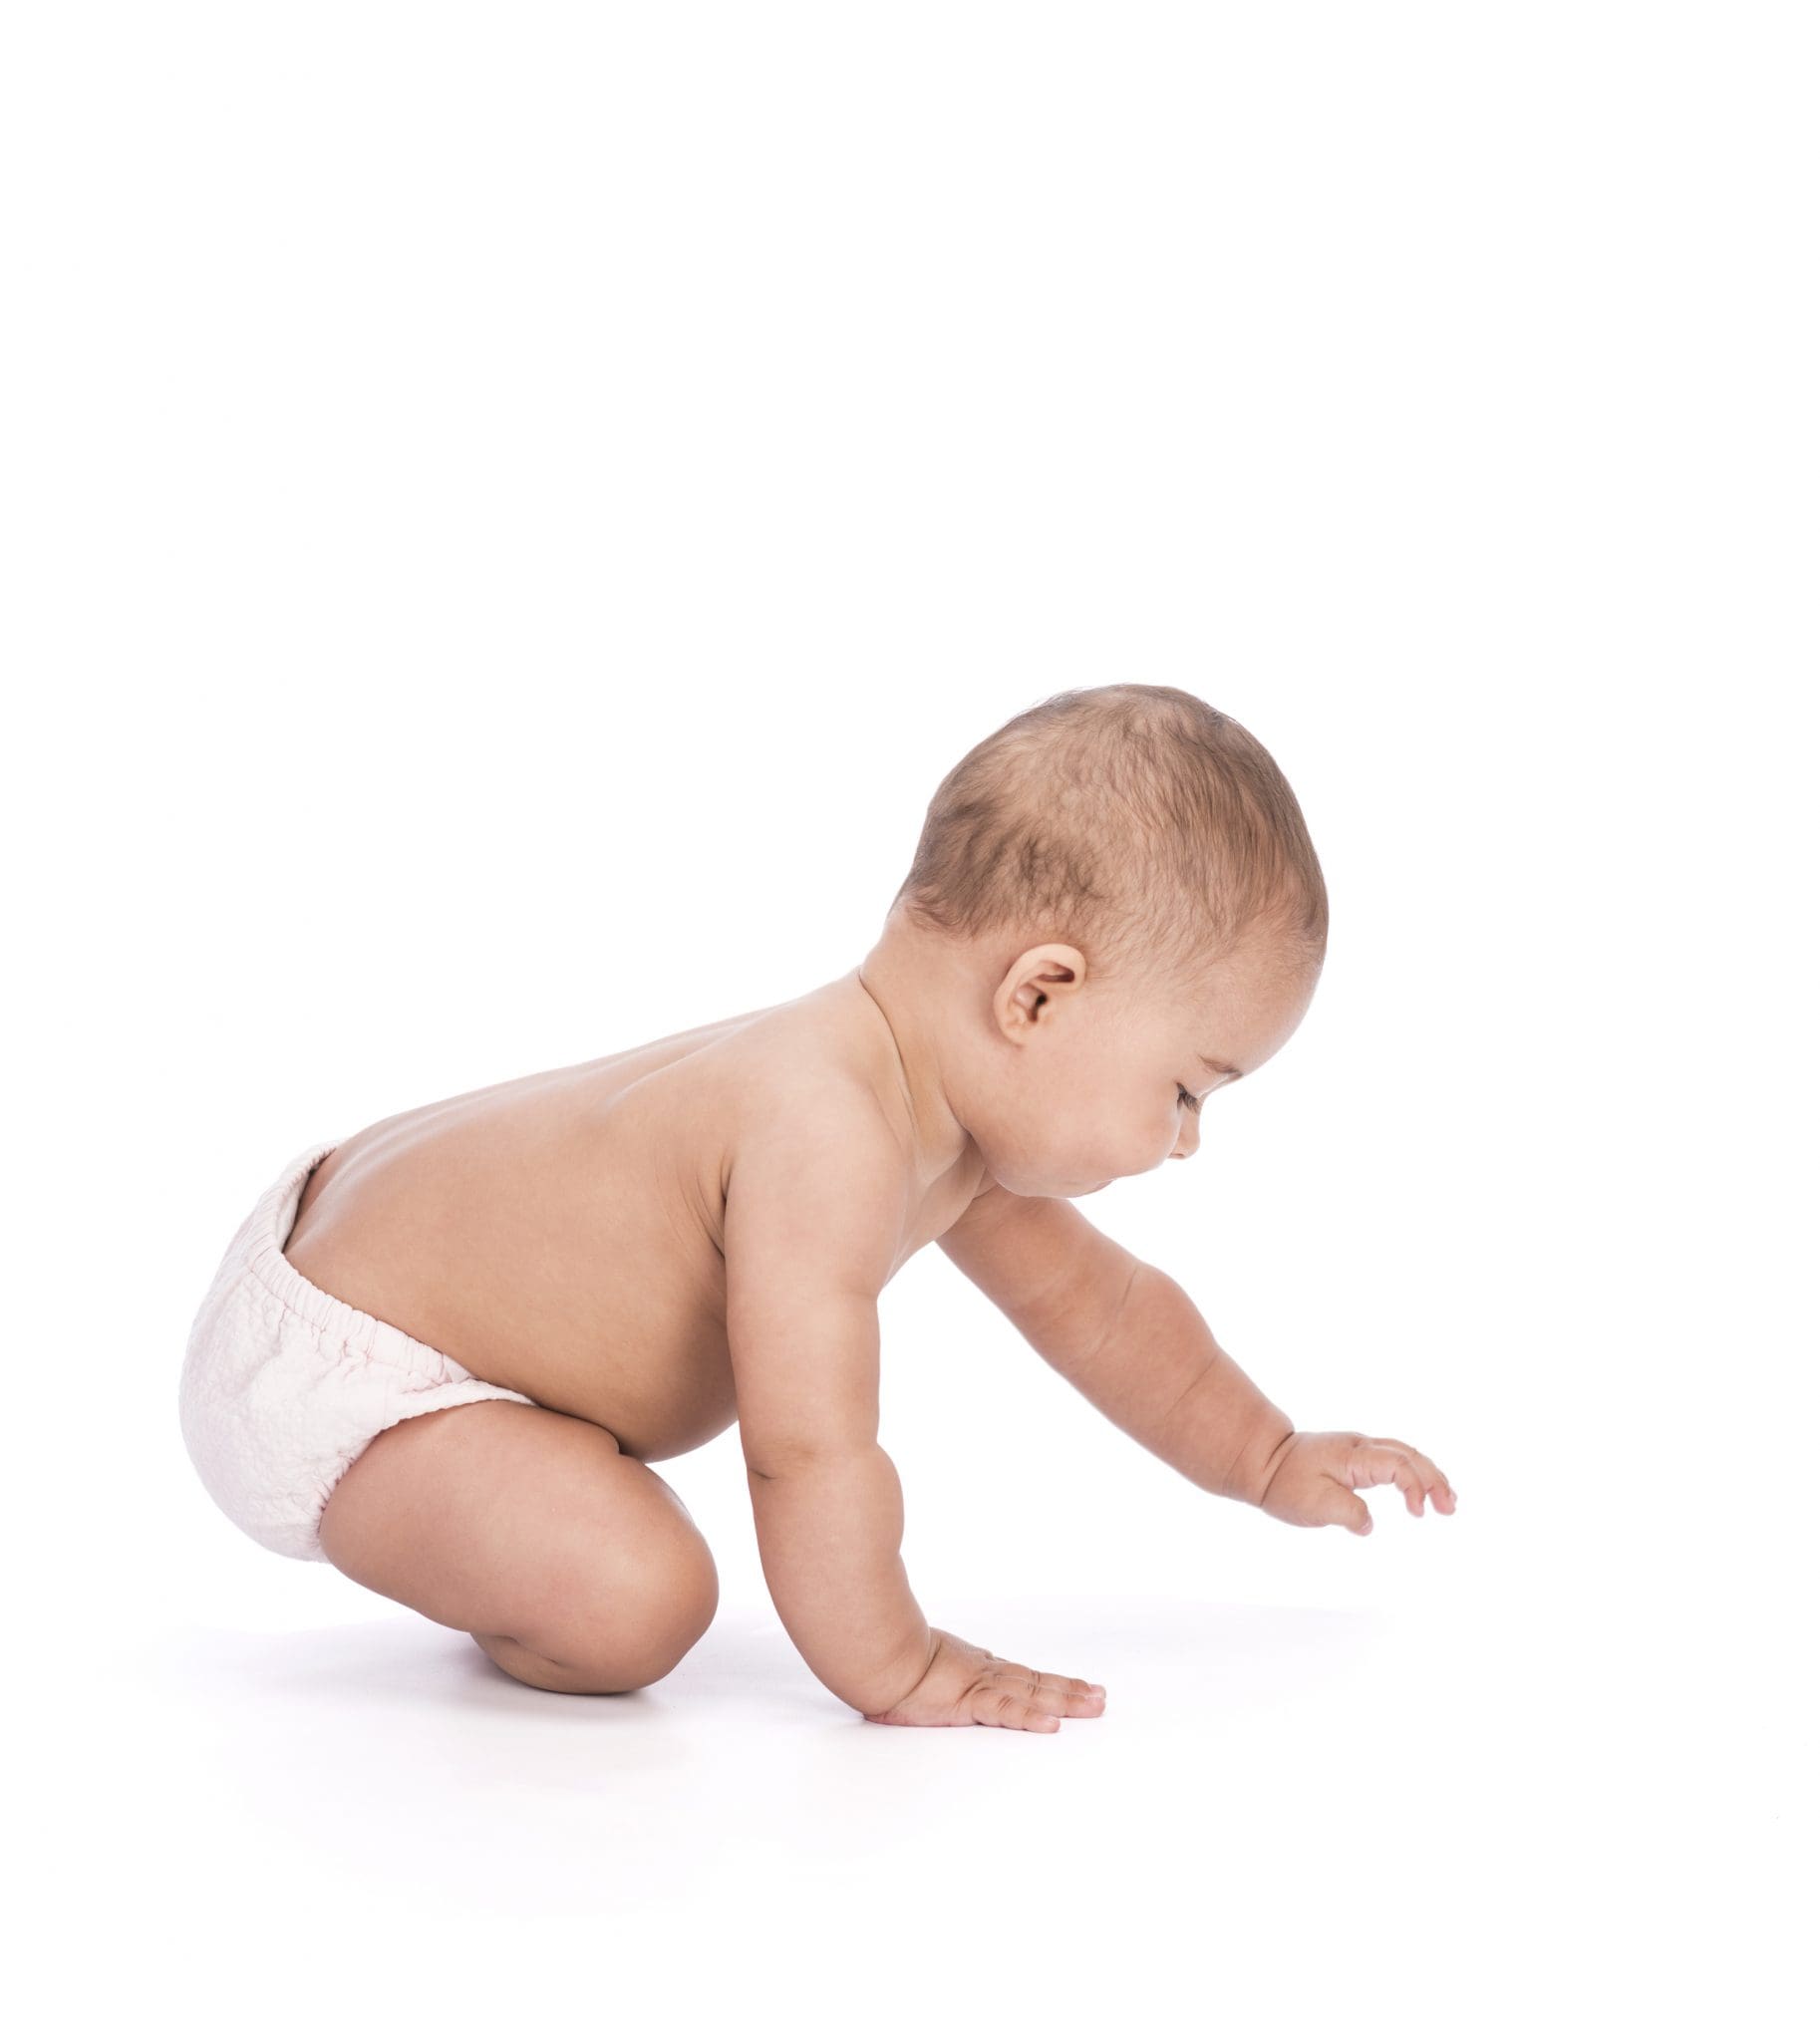 Développement neuro-moteur de la naissance à 24 mois